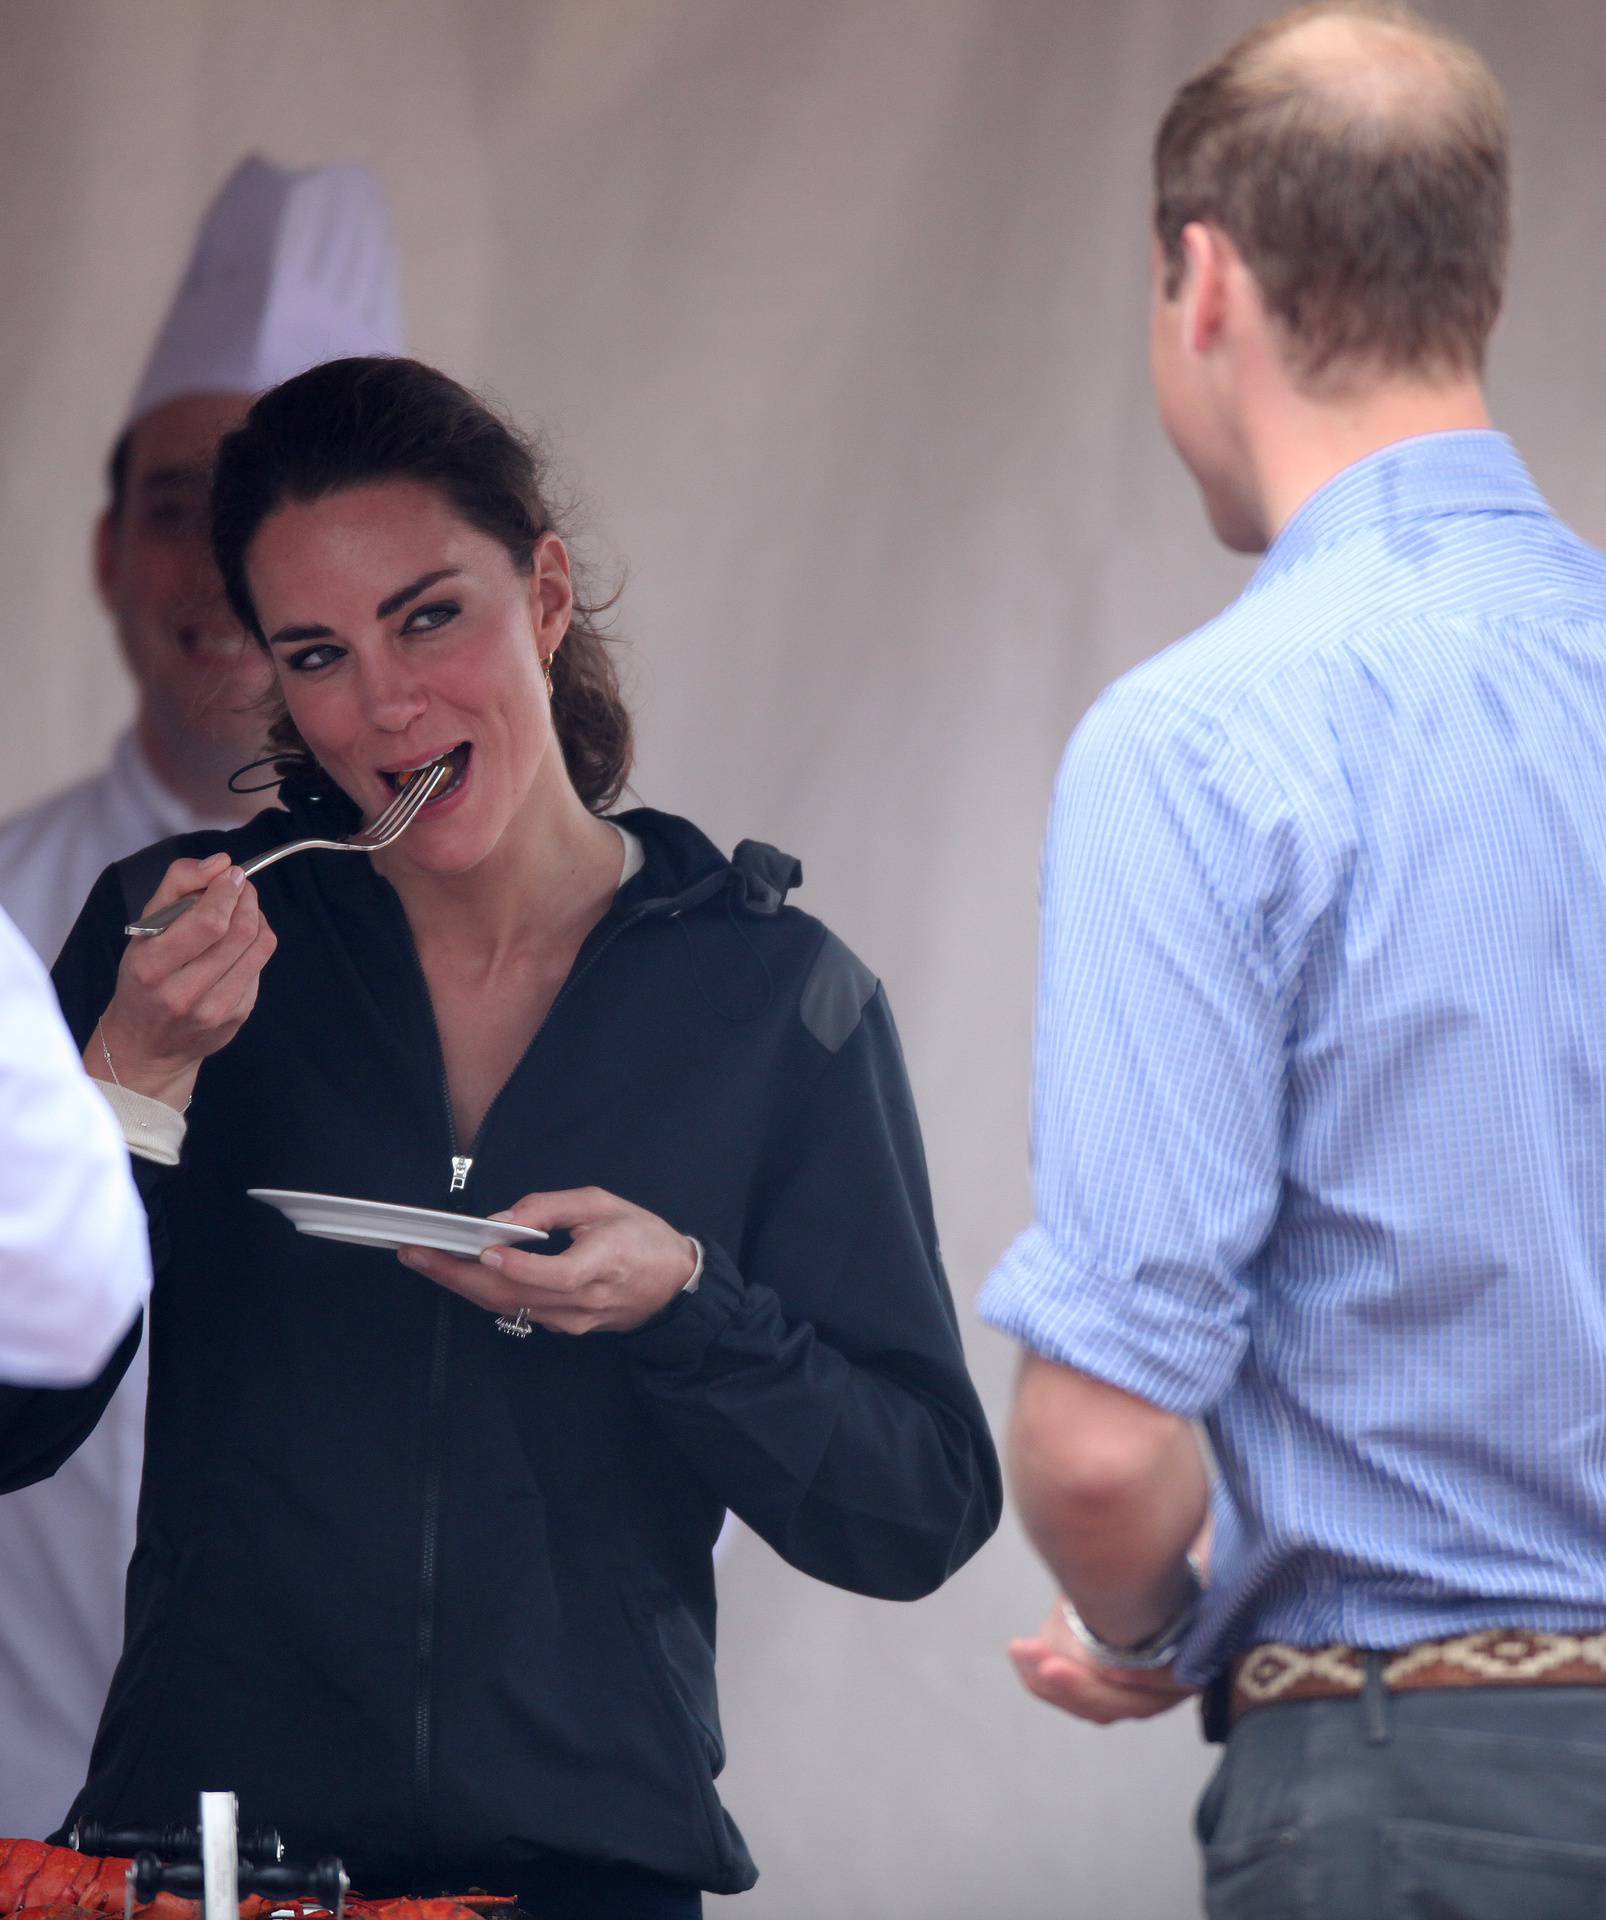 Prince Edward Island: Unato? glasinama o anoreksiji princeza Kate ipak jede